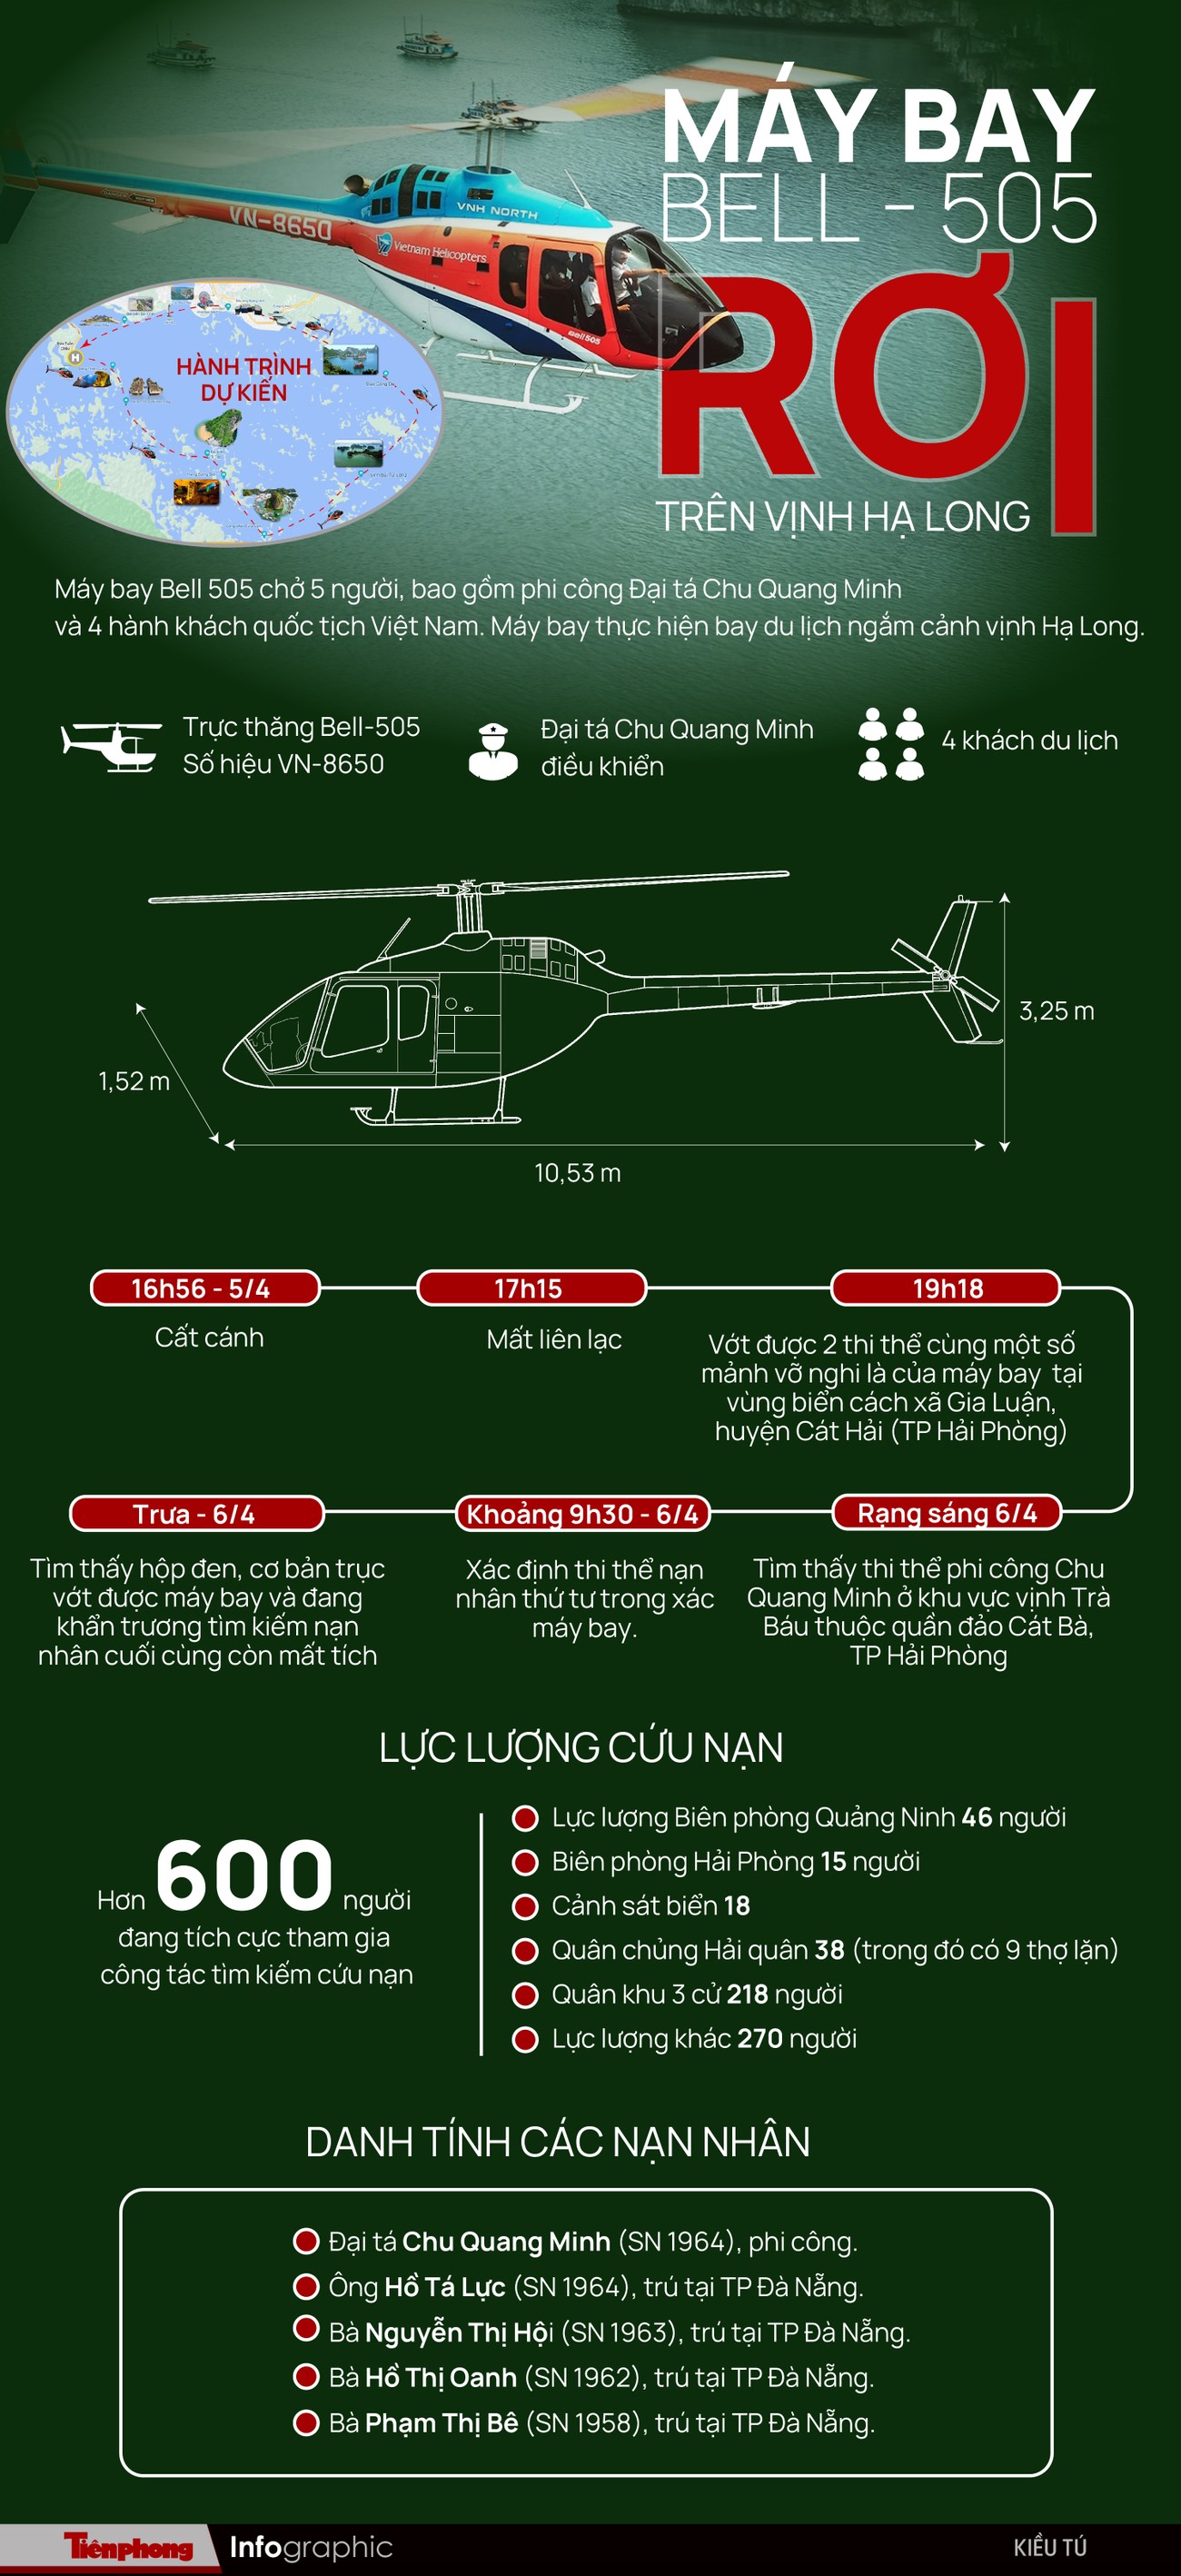 Infographic: Chi tiết vụ trực thăng BELL - 505 rơi trên vịnh Hạ Long - 1